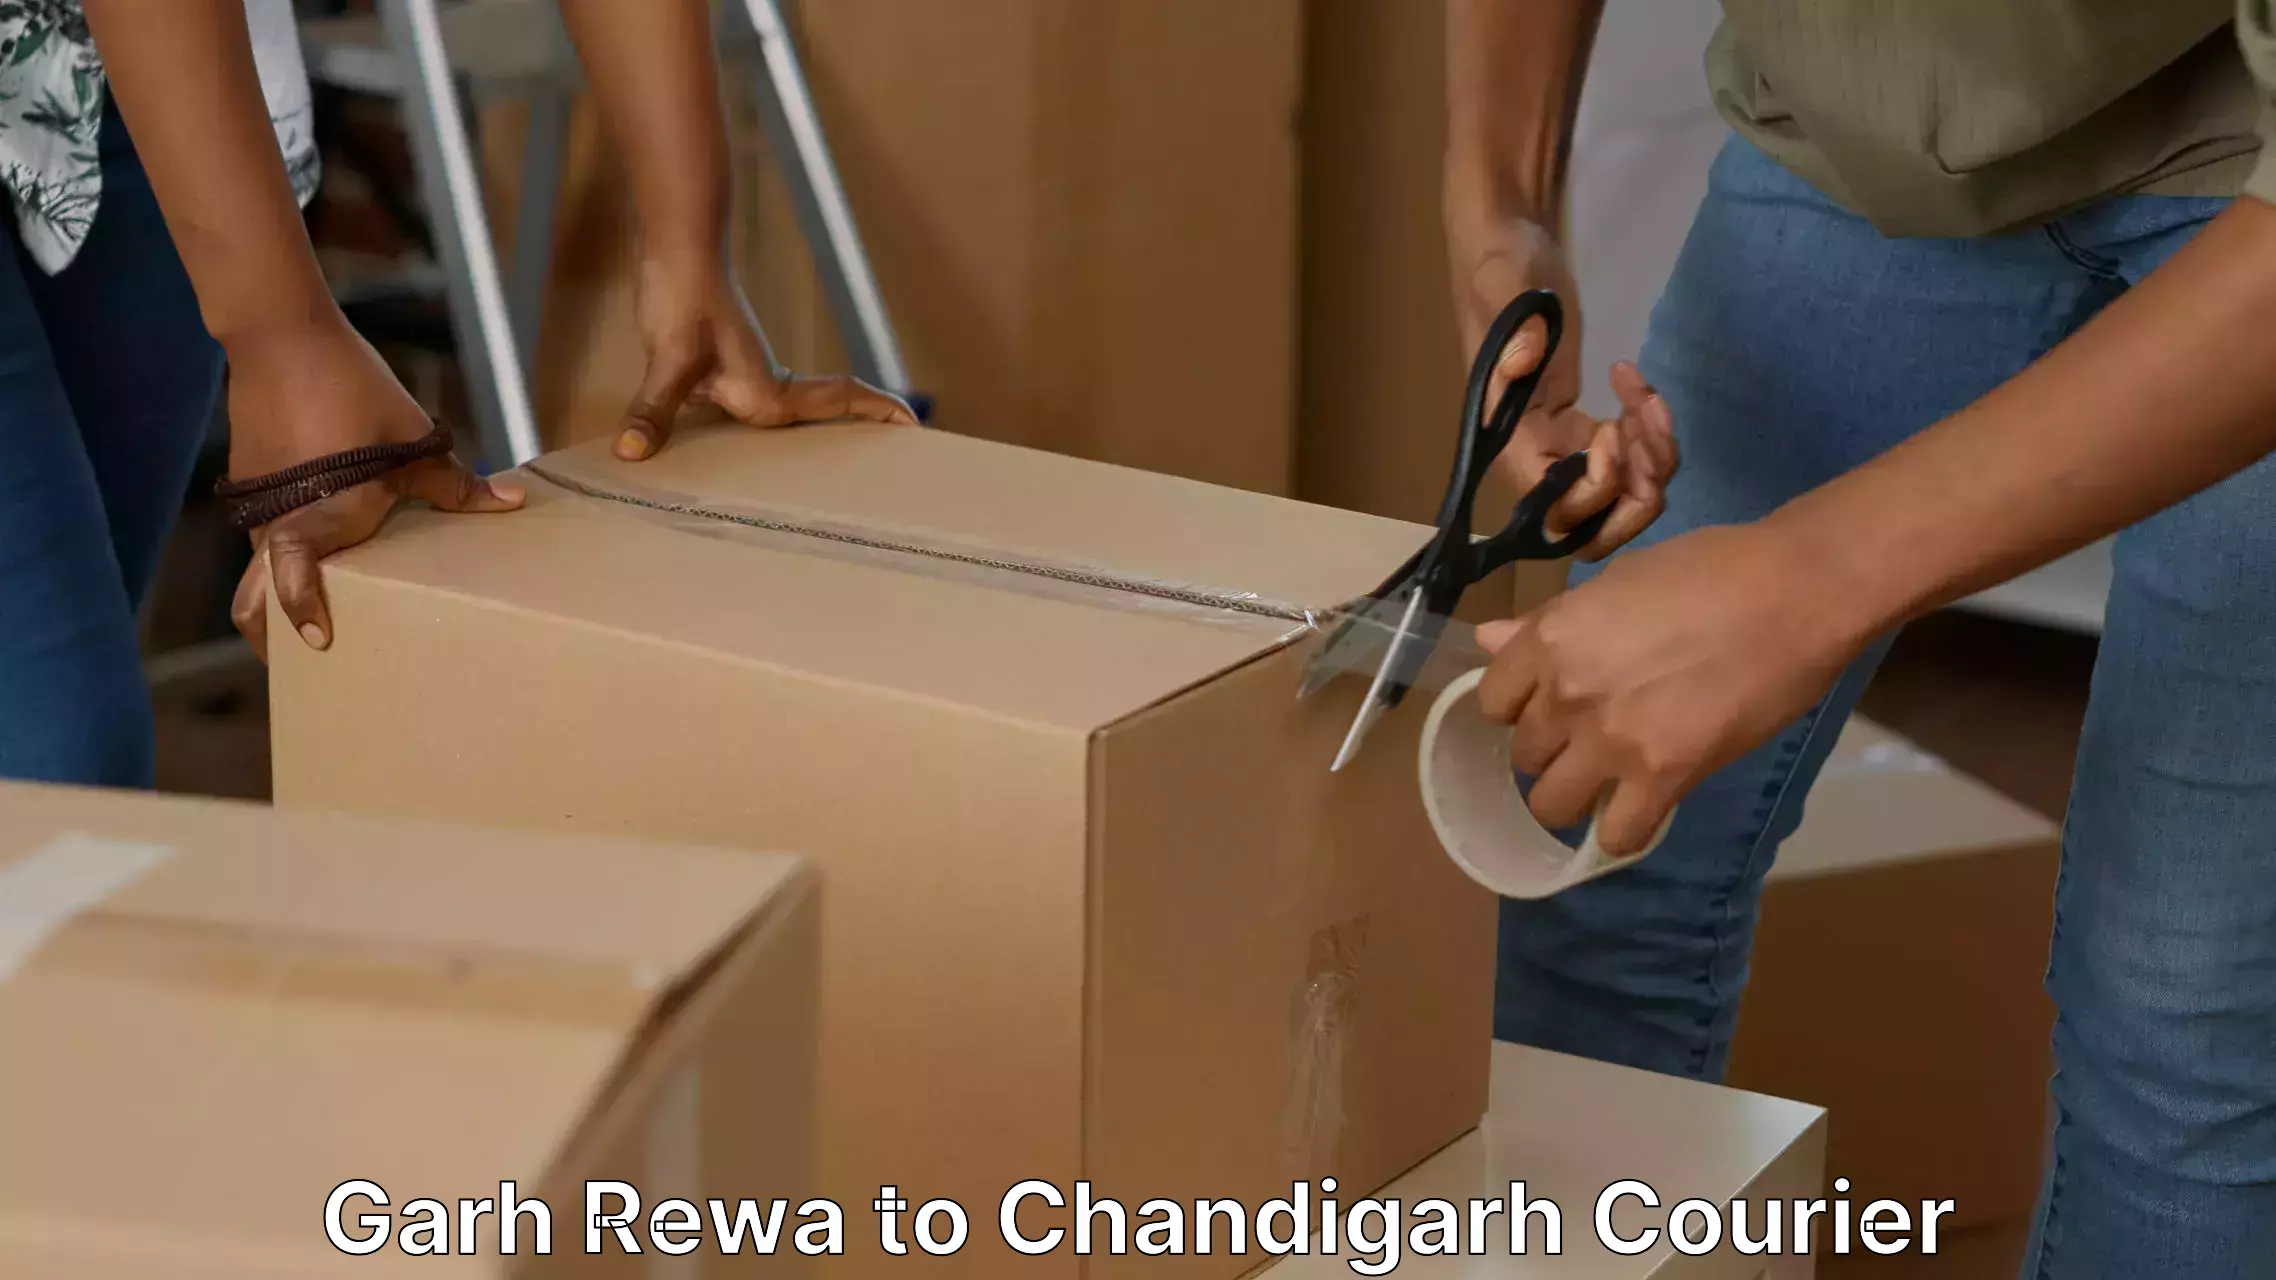 Efficient moving company Garh Rewa to Panjab University Chandigarh